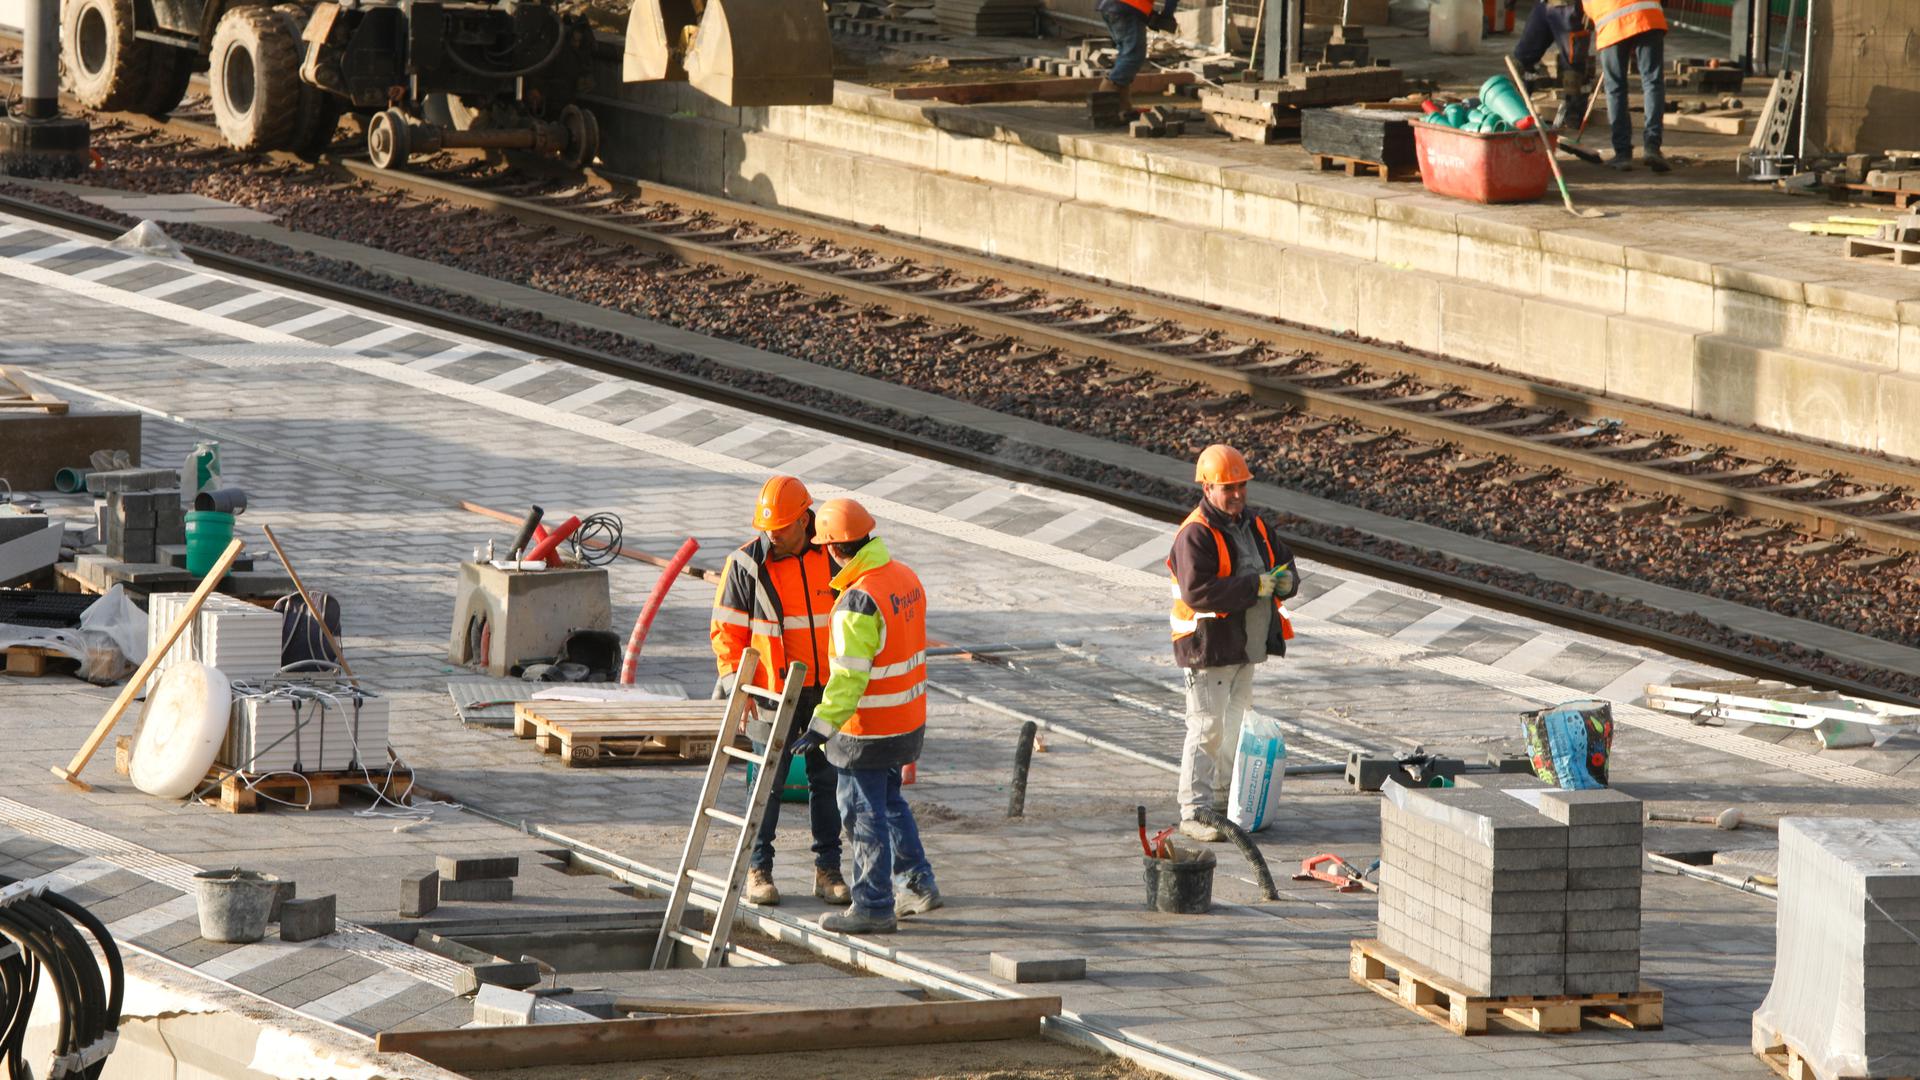 Le nouveau quai en gare de Luxembourg doit permettre de fluidifier le trafic et d'accueillir plus de voyageurs transfrontaliers.